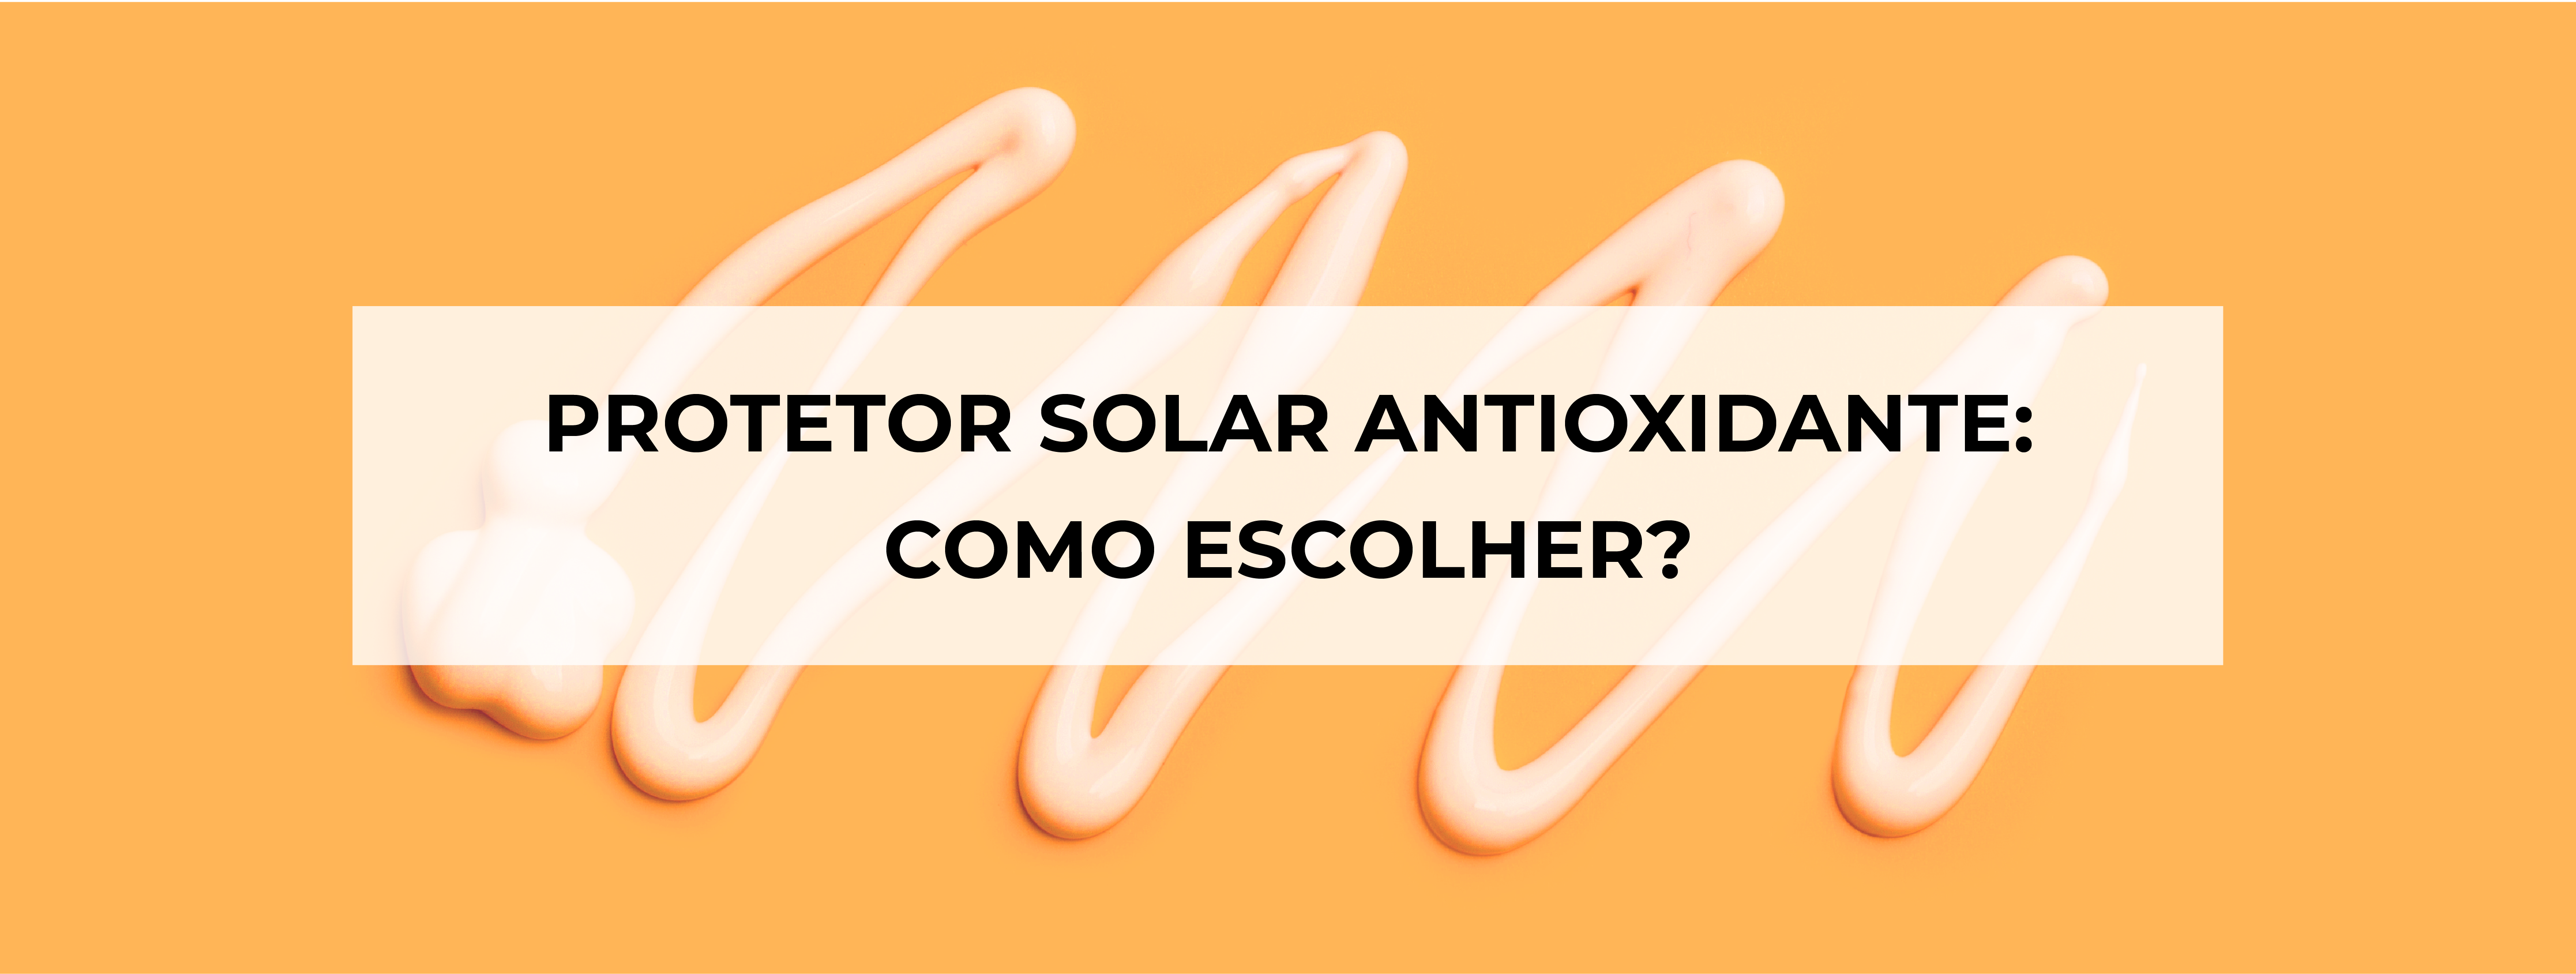 Protetor solar antioxidante, como escolher?